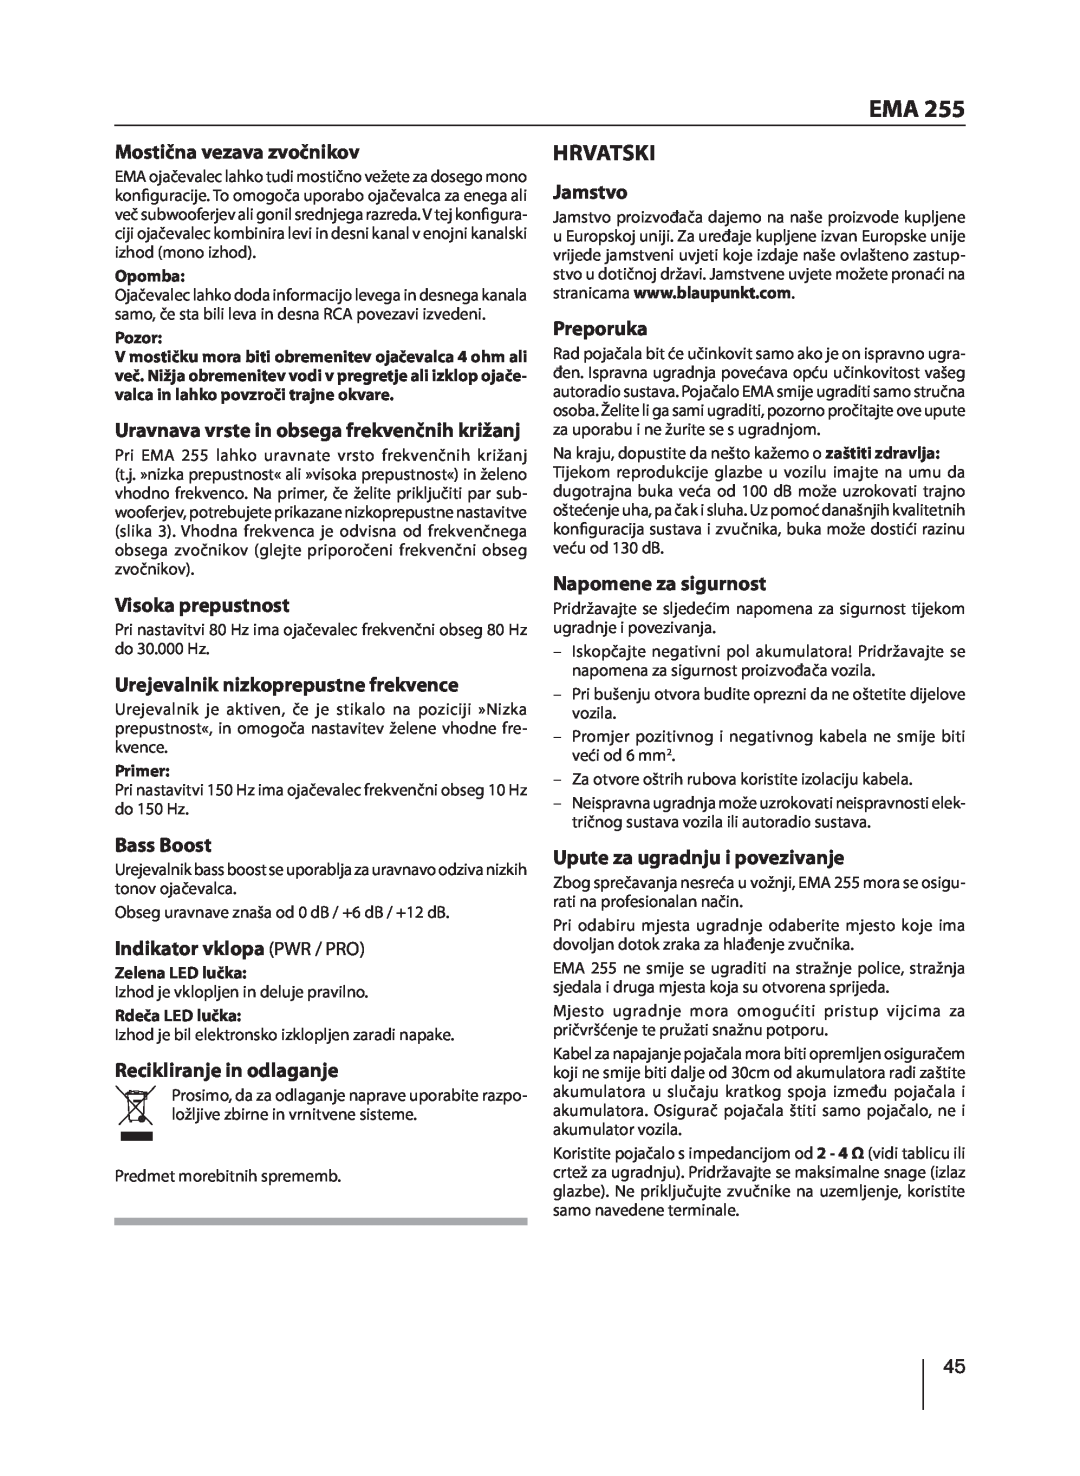 Blaupunkt EMA 255 manual Hrvatski 